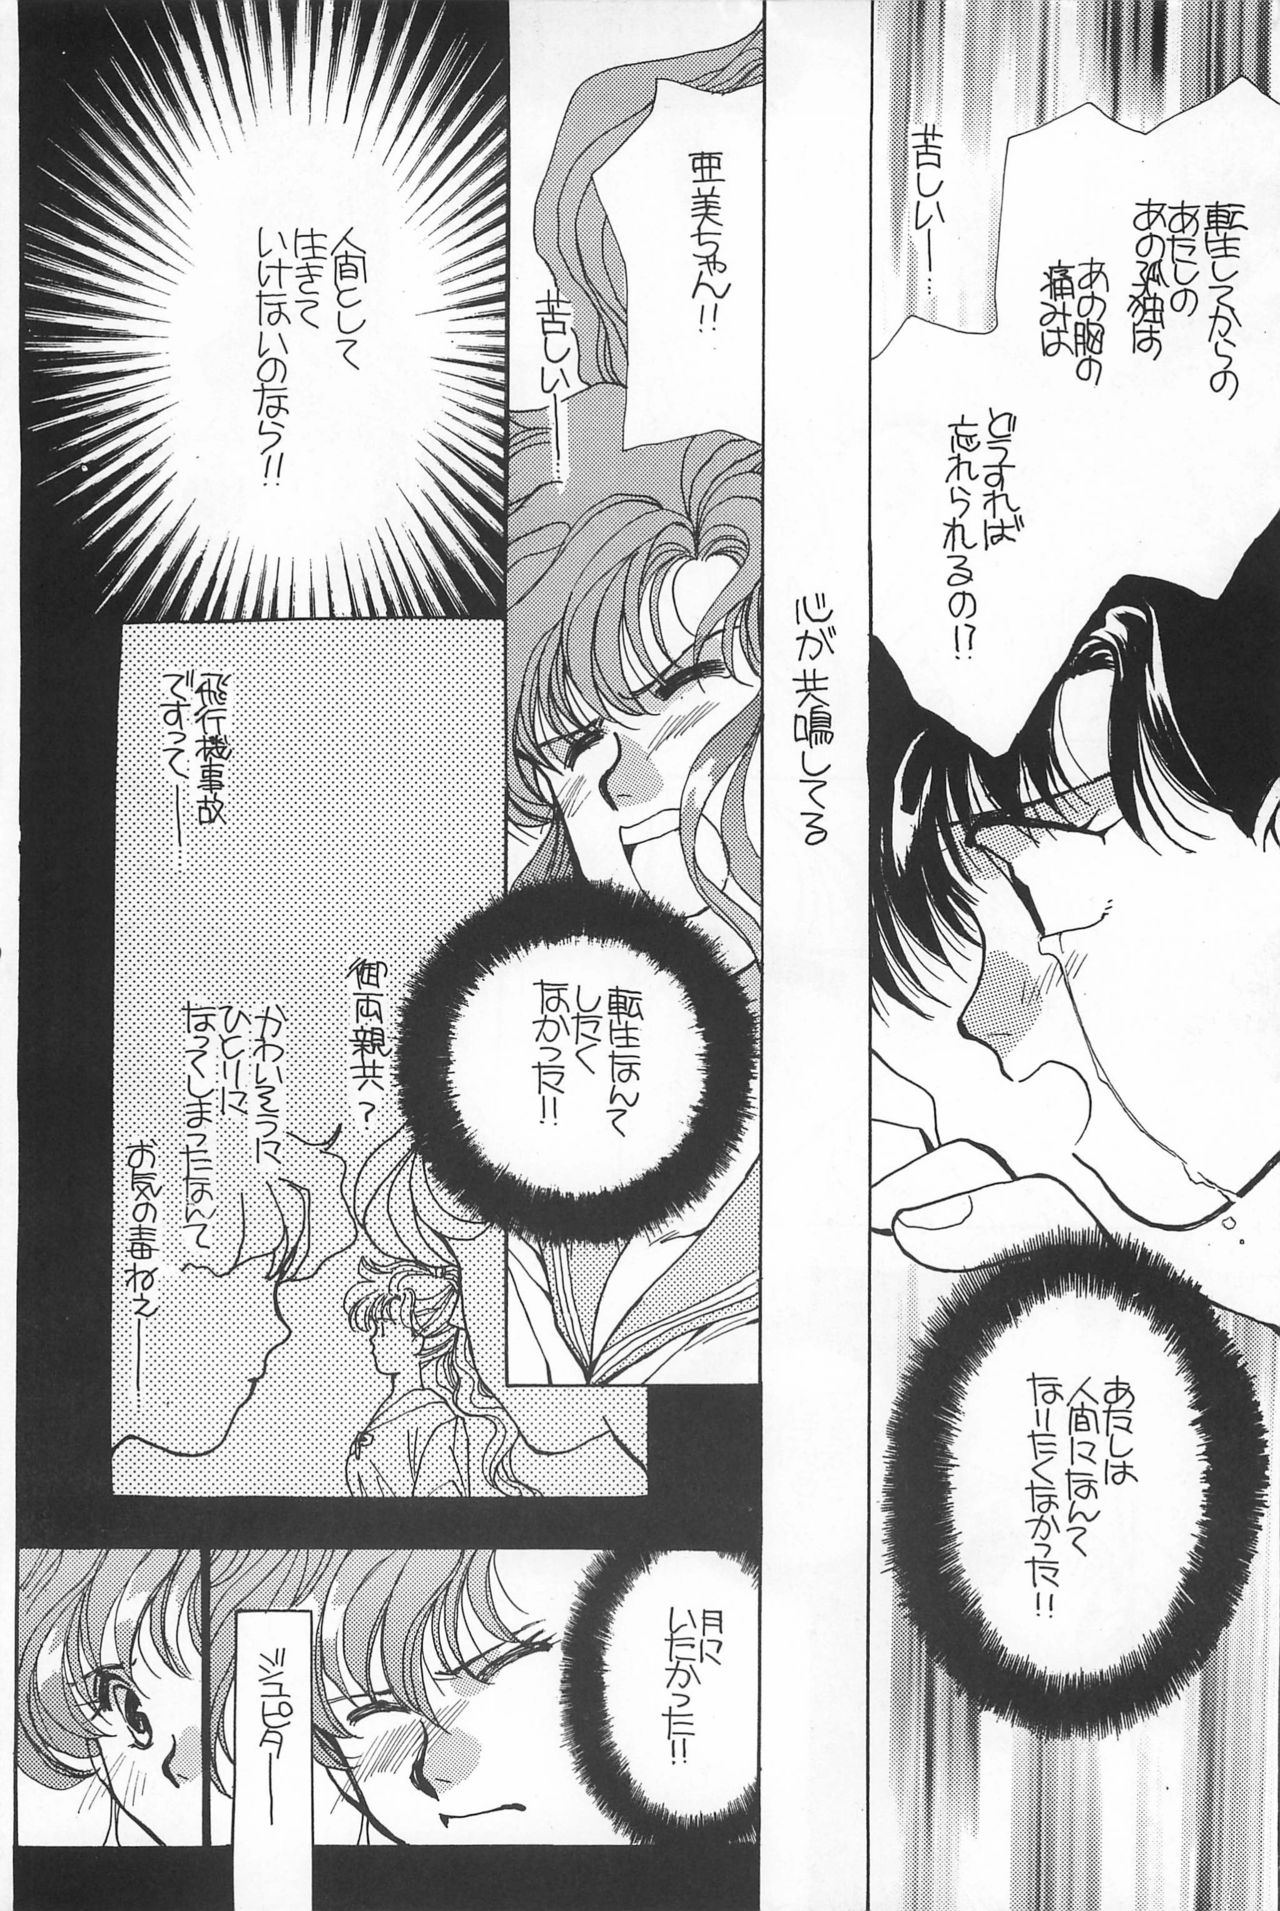 [Hello World (Muttri Moony)] Kaze no You ni Yume no You ni - Sailor Moon Collection (Sailor Moon) 189